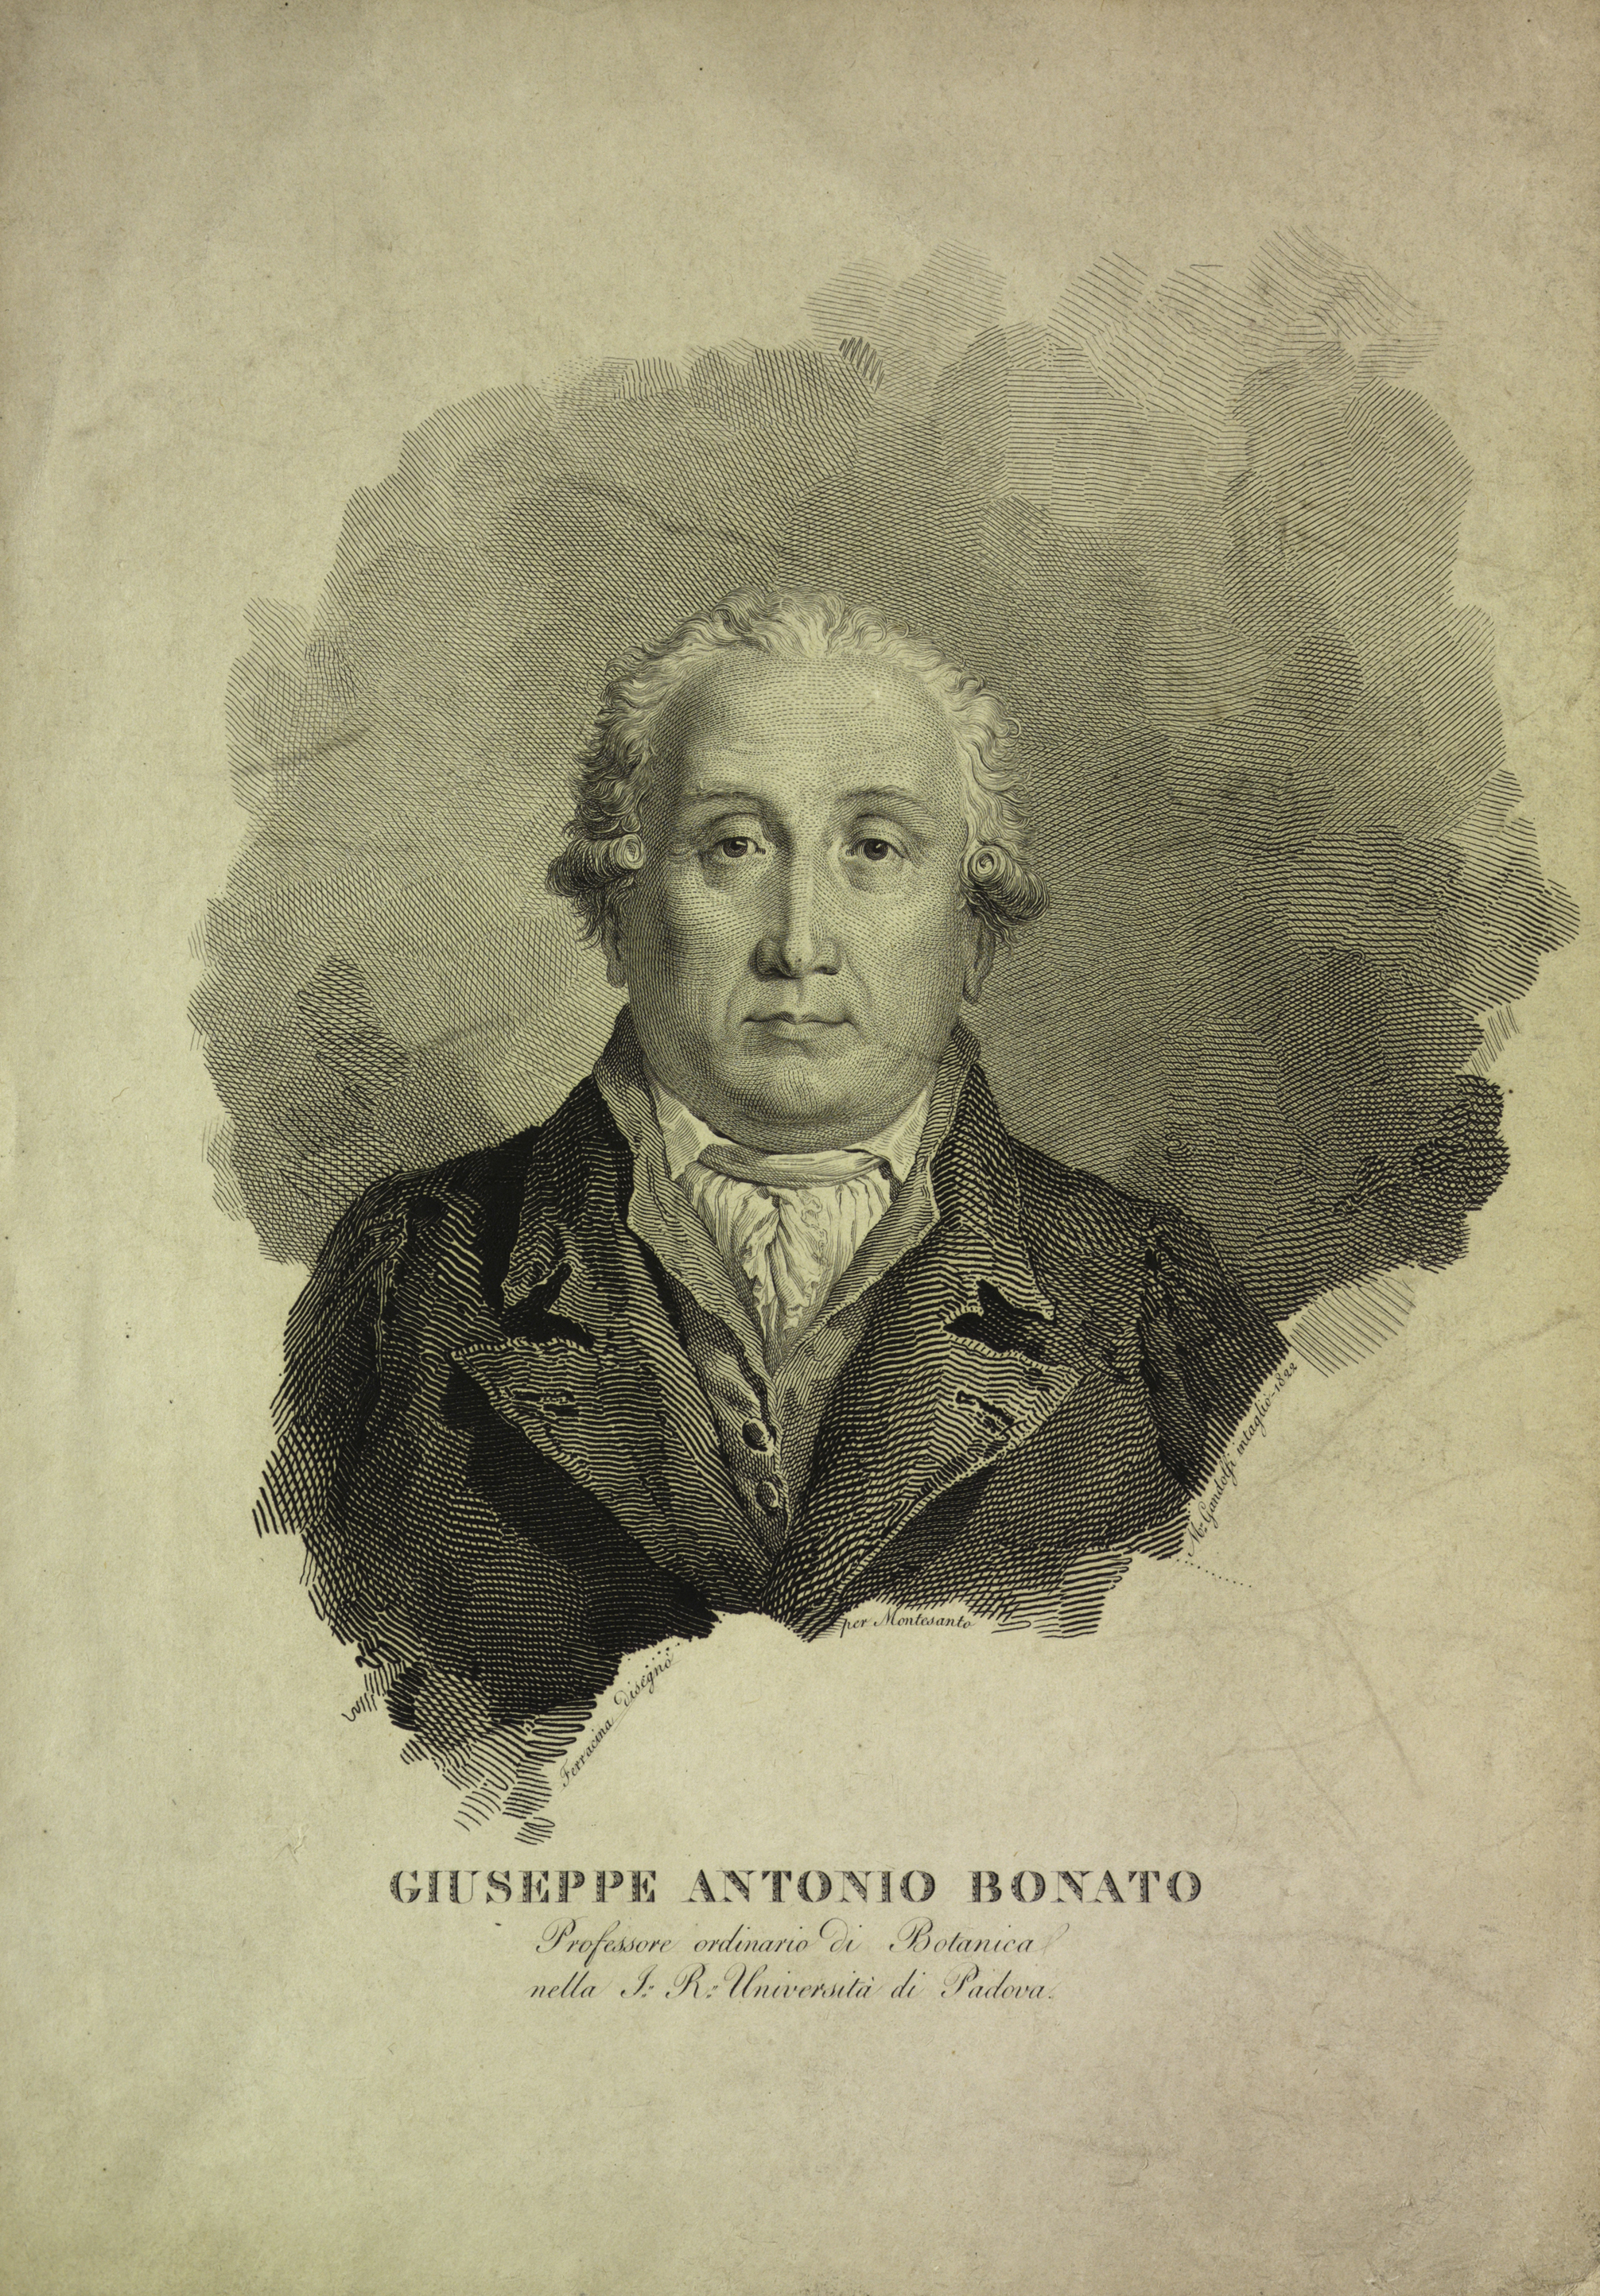 Giuseppe Antonio Bonato